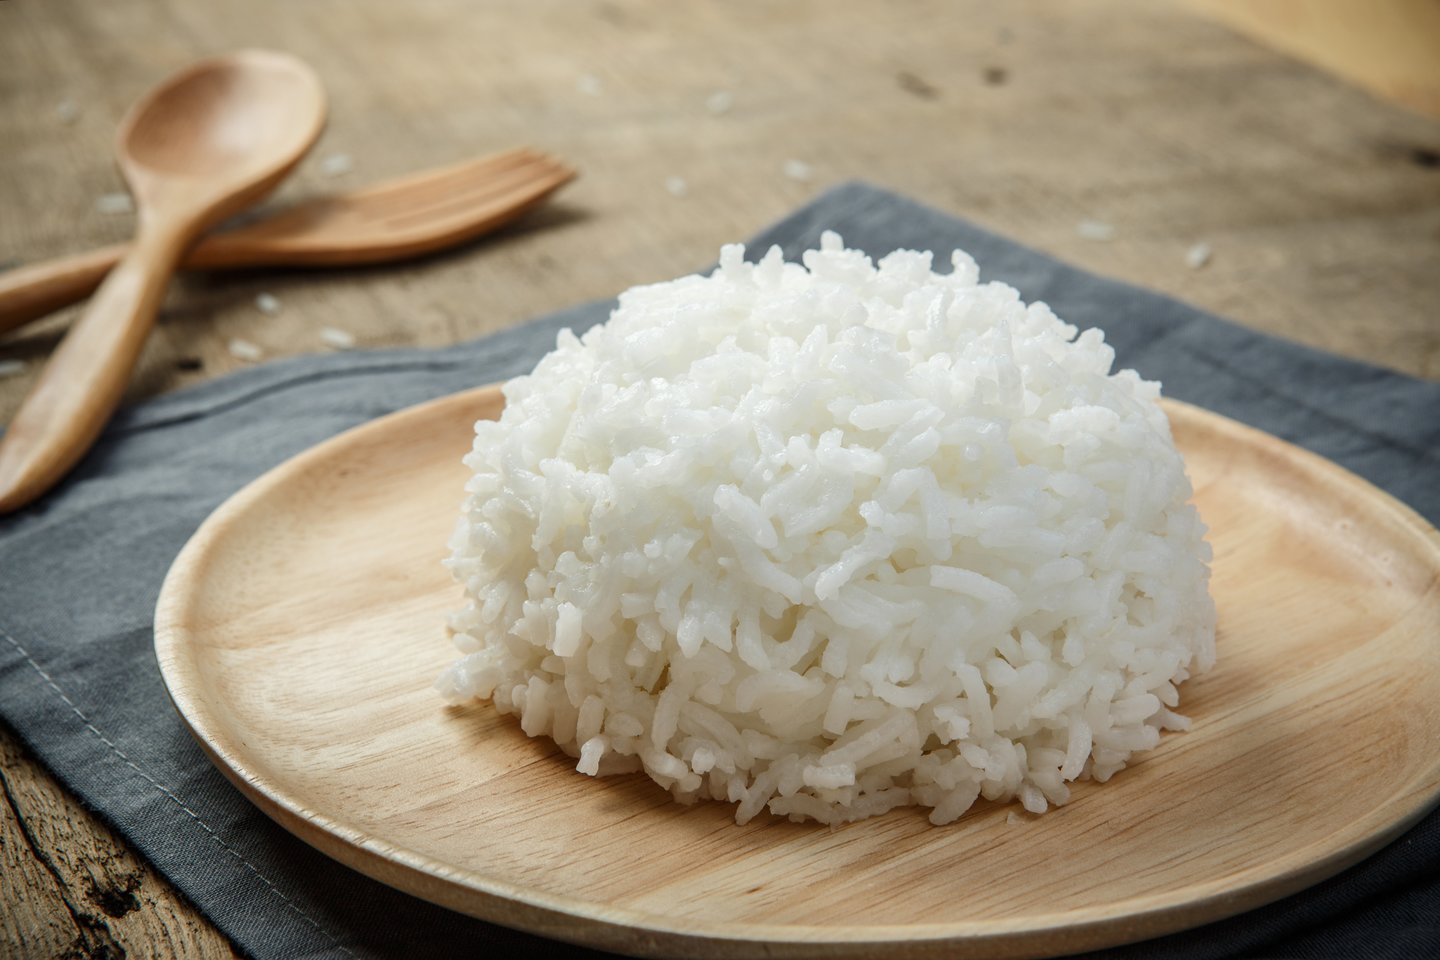 Atrodytų, išvirti ryžius paprasta. Tačiau norint išvirti puikius ryžius reikia žinoti keletą taisyklių.<br> 123rf nuotr.